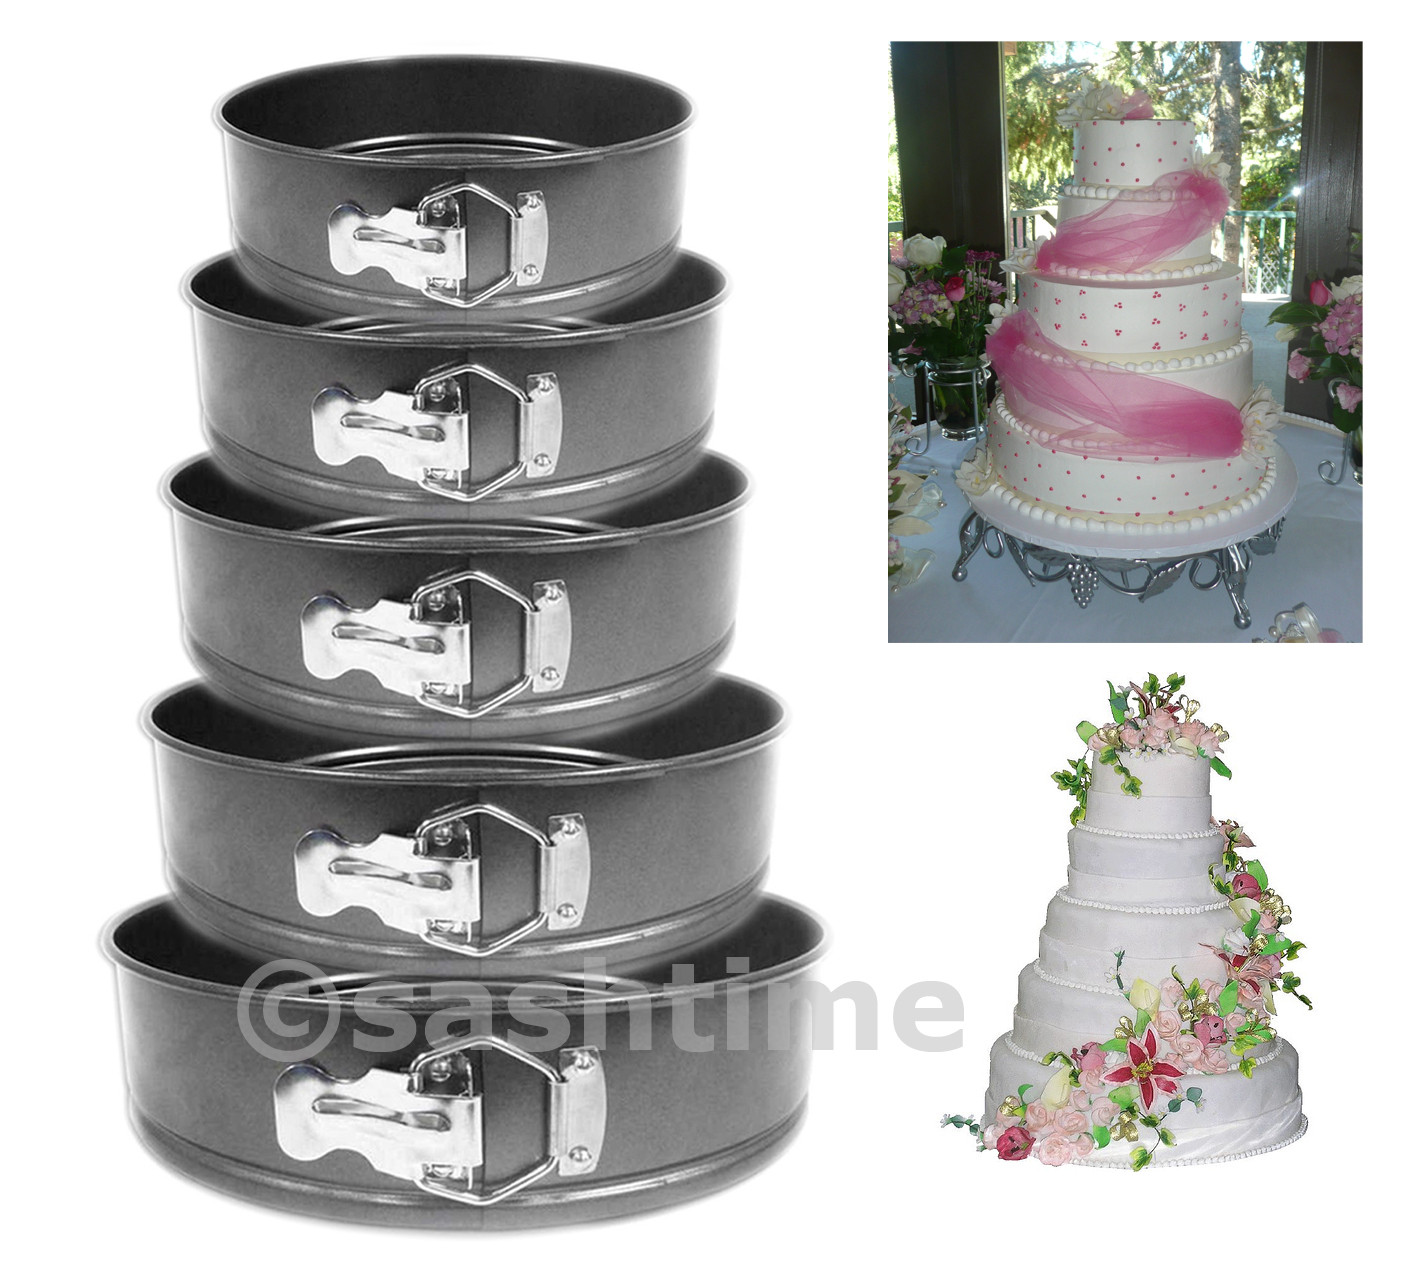 Wedding Cake Pans
 NEW 5PC NON STICK SPRINGFORM CAKE PAN BAKING BAKE ROUND